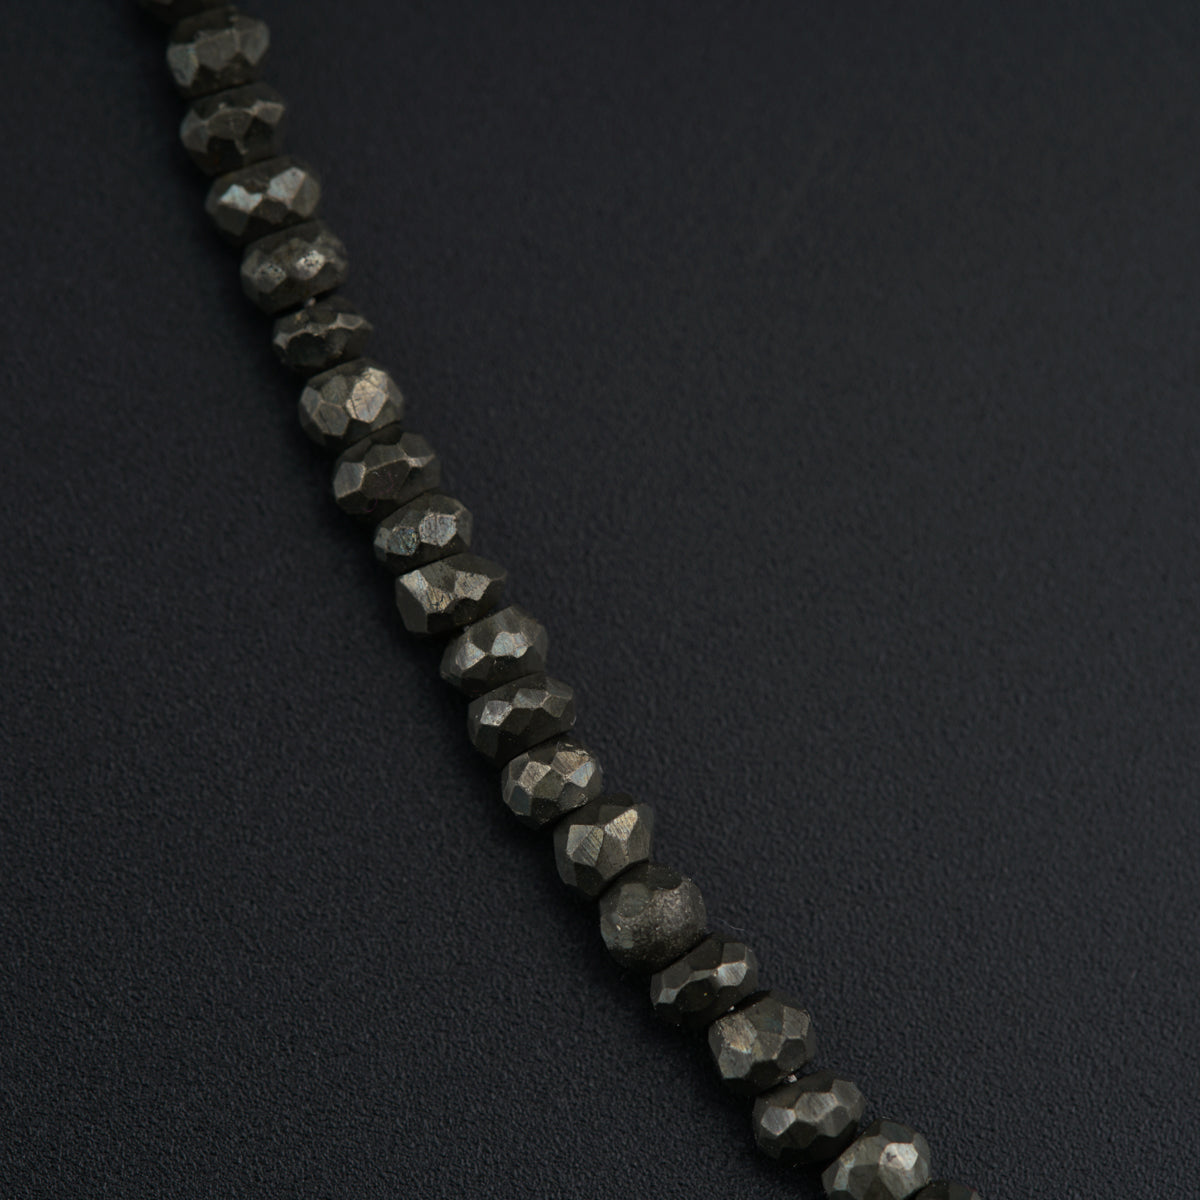 a black diamond necklace on a black surface